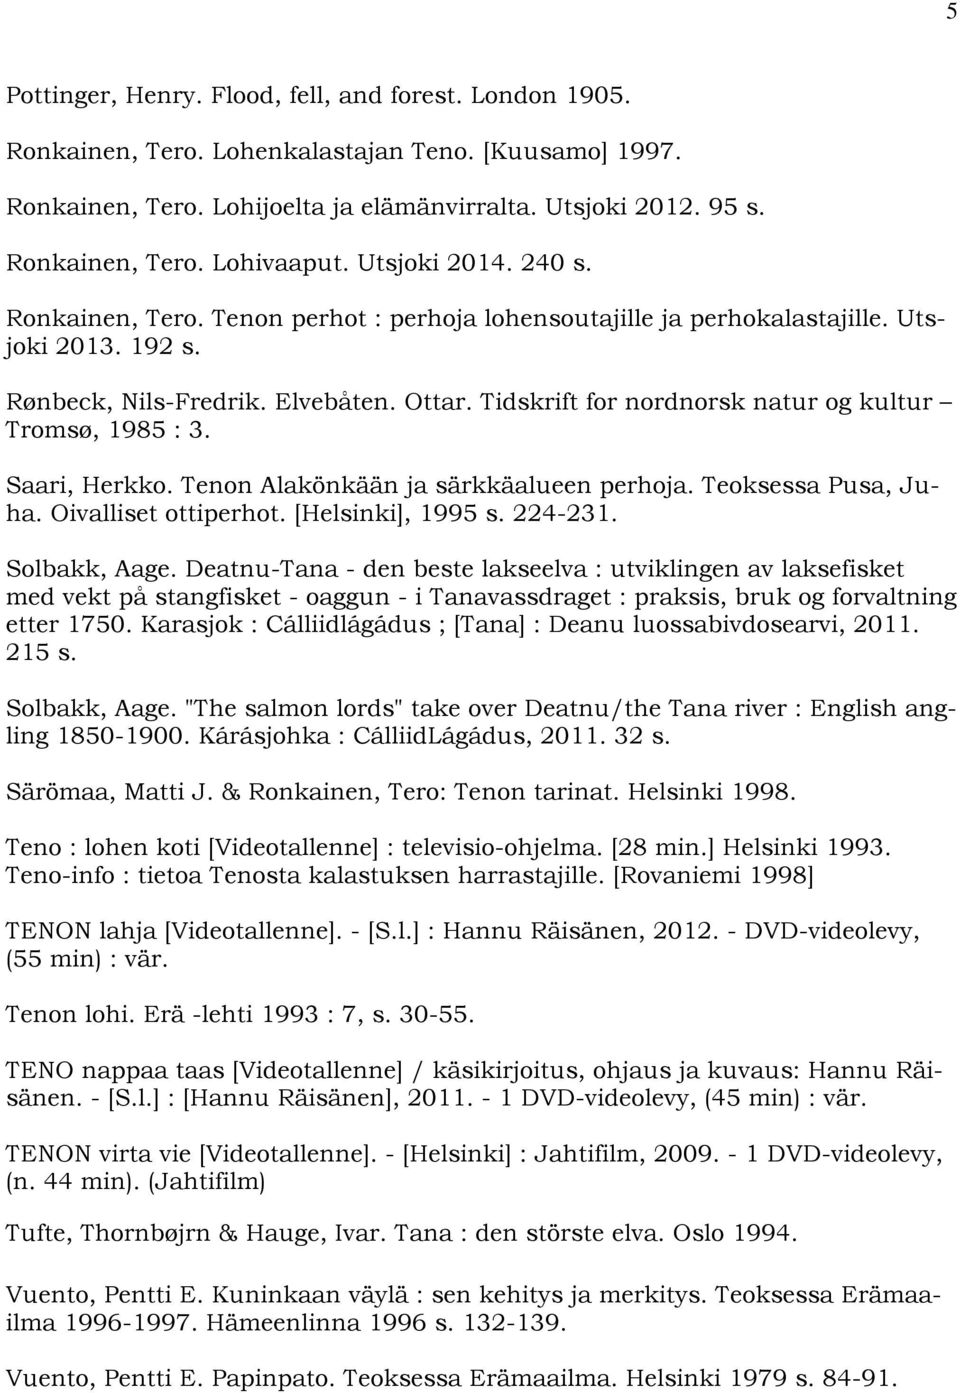 Tidskrift for nordnorsk natur og kultur Tromsø, 1985 : 3. Saari, Herkko. Tenon Alakönkään ja särkkäalueen perhoja. Teoksessa Pusa, Juha. Oivalliset ottiperhot. [Helsinki], 1995 s. 224-231.